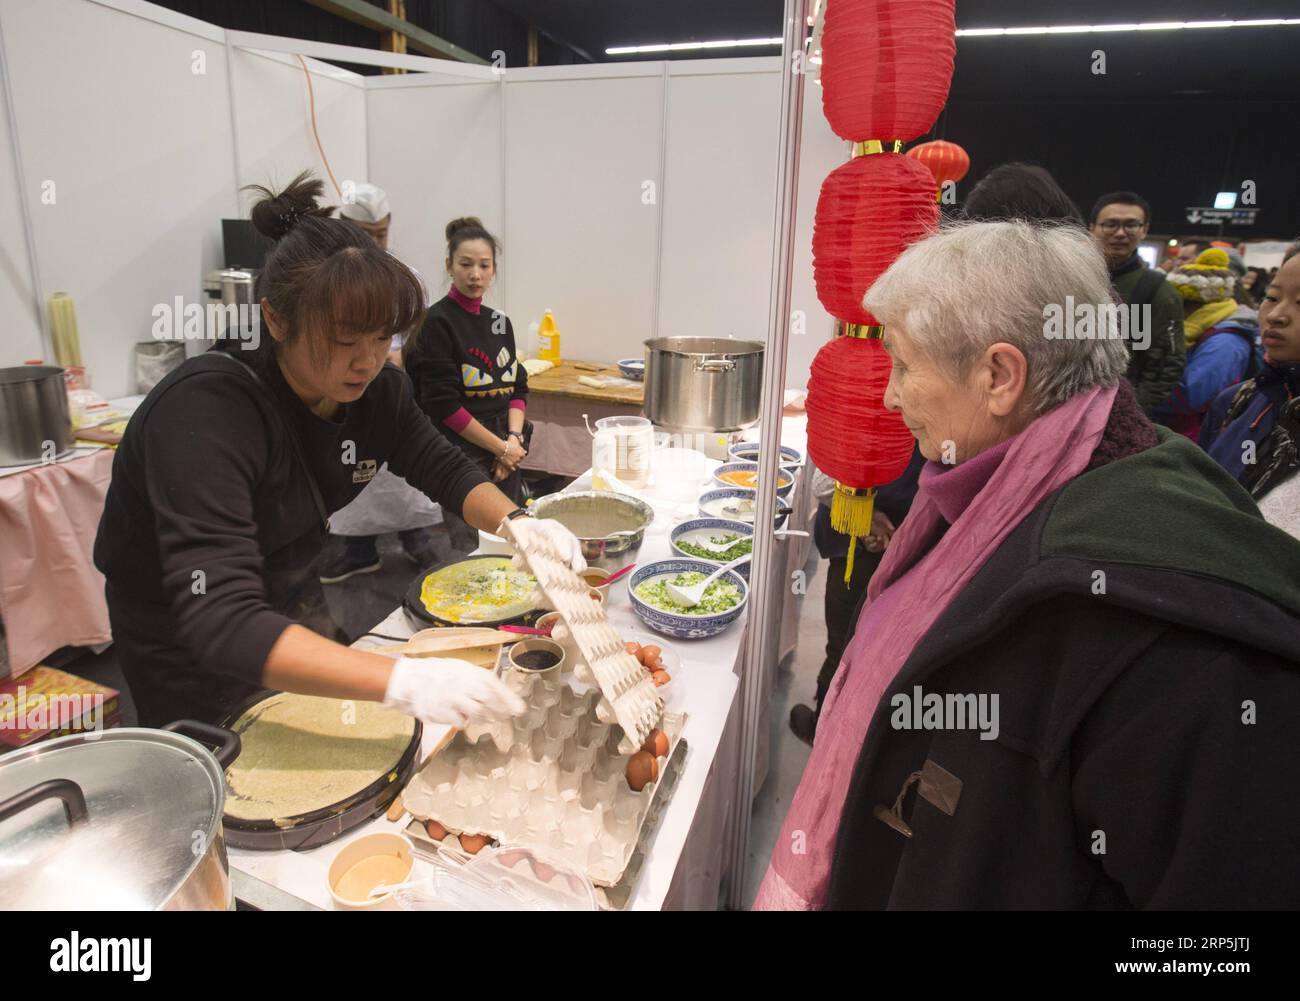 (181216) - BERNA, 16 de diciembre de 2018 -- Una mujer local espera para probar crepe chino durante el Festival de la Cultura de la Comida China en Berna, capital de Suiza, el 16 de diciembre de 2018. El domingo se celebró el primer Festival de la Cultura Alimentaria China en el interior de Bernexpo, en la capital suiza, que atrajo a más de 1.000 residentes locales en la temporada festiva de Navidad. Los visitantes disfrutaron de aperitivos chinos, así como de actuaciones tradicionales como caligrafía, canciones populares y artes marciales, durante el festival de un día apoyado por la Embajada de China y patrocinado por varias asociaciones locales. SUIZA-BERNA-CHINA Foto de stock